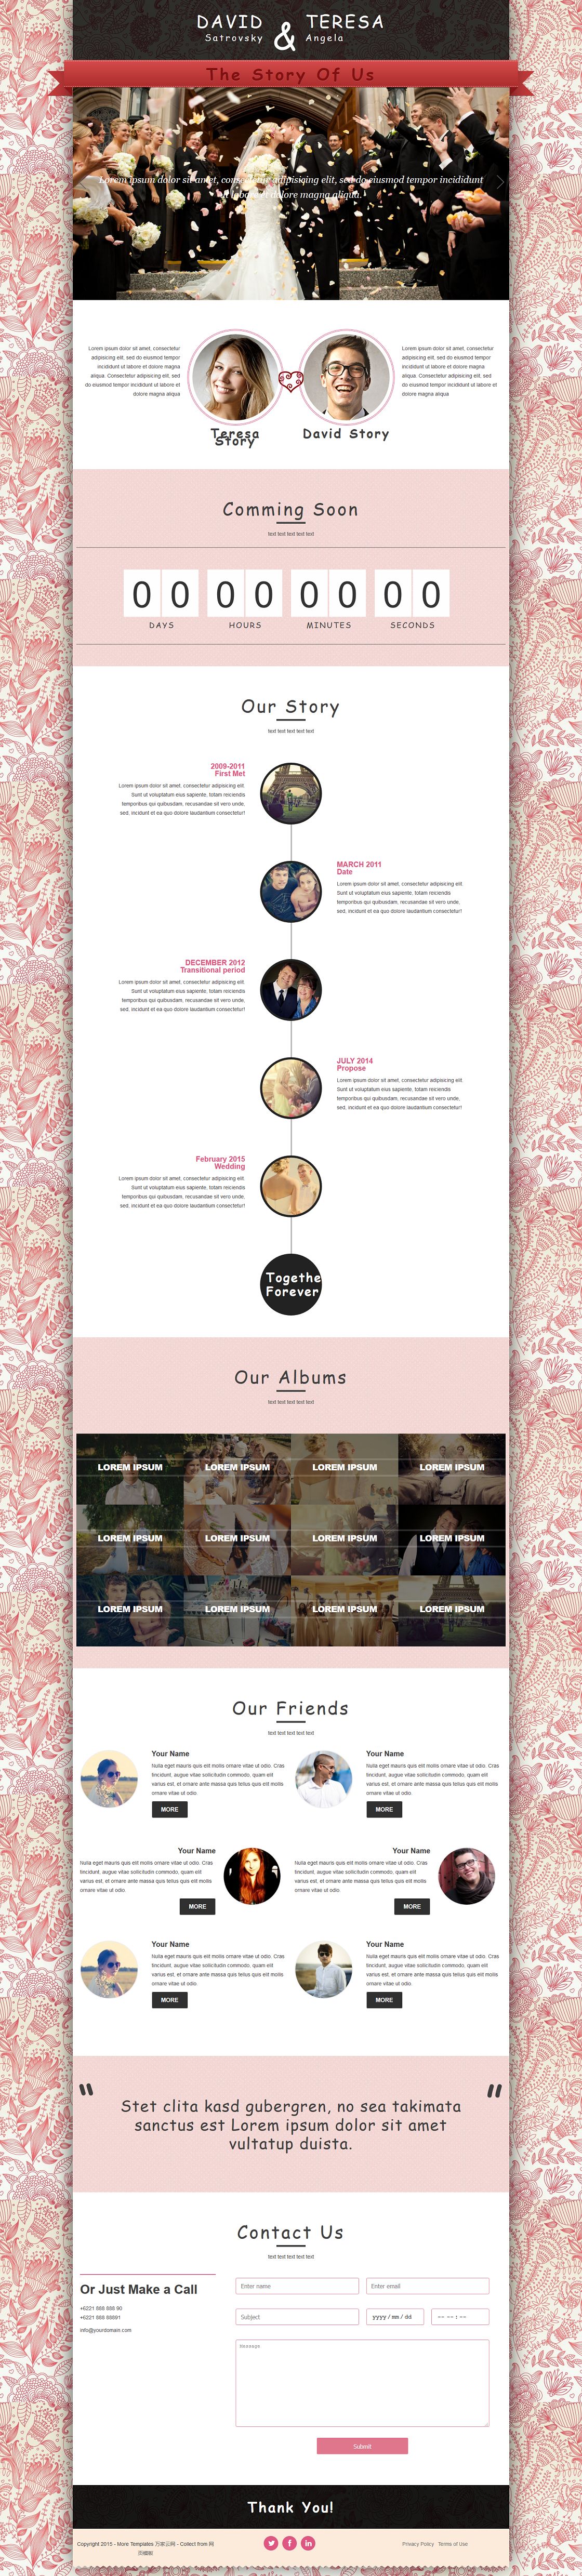 粉色花纹背景婚庆公司企业网站模板